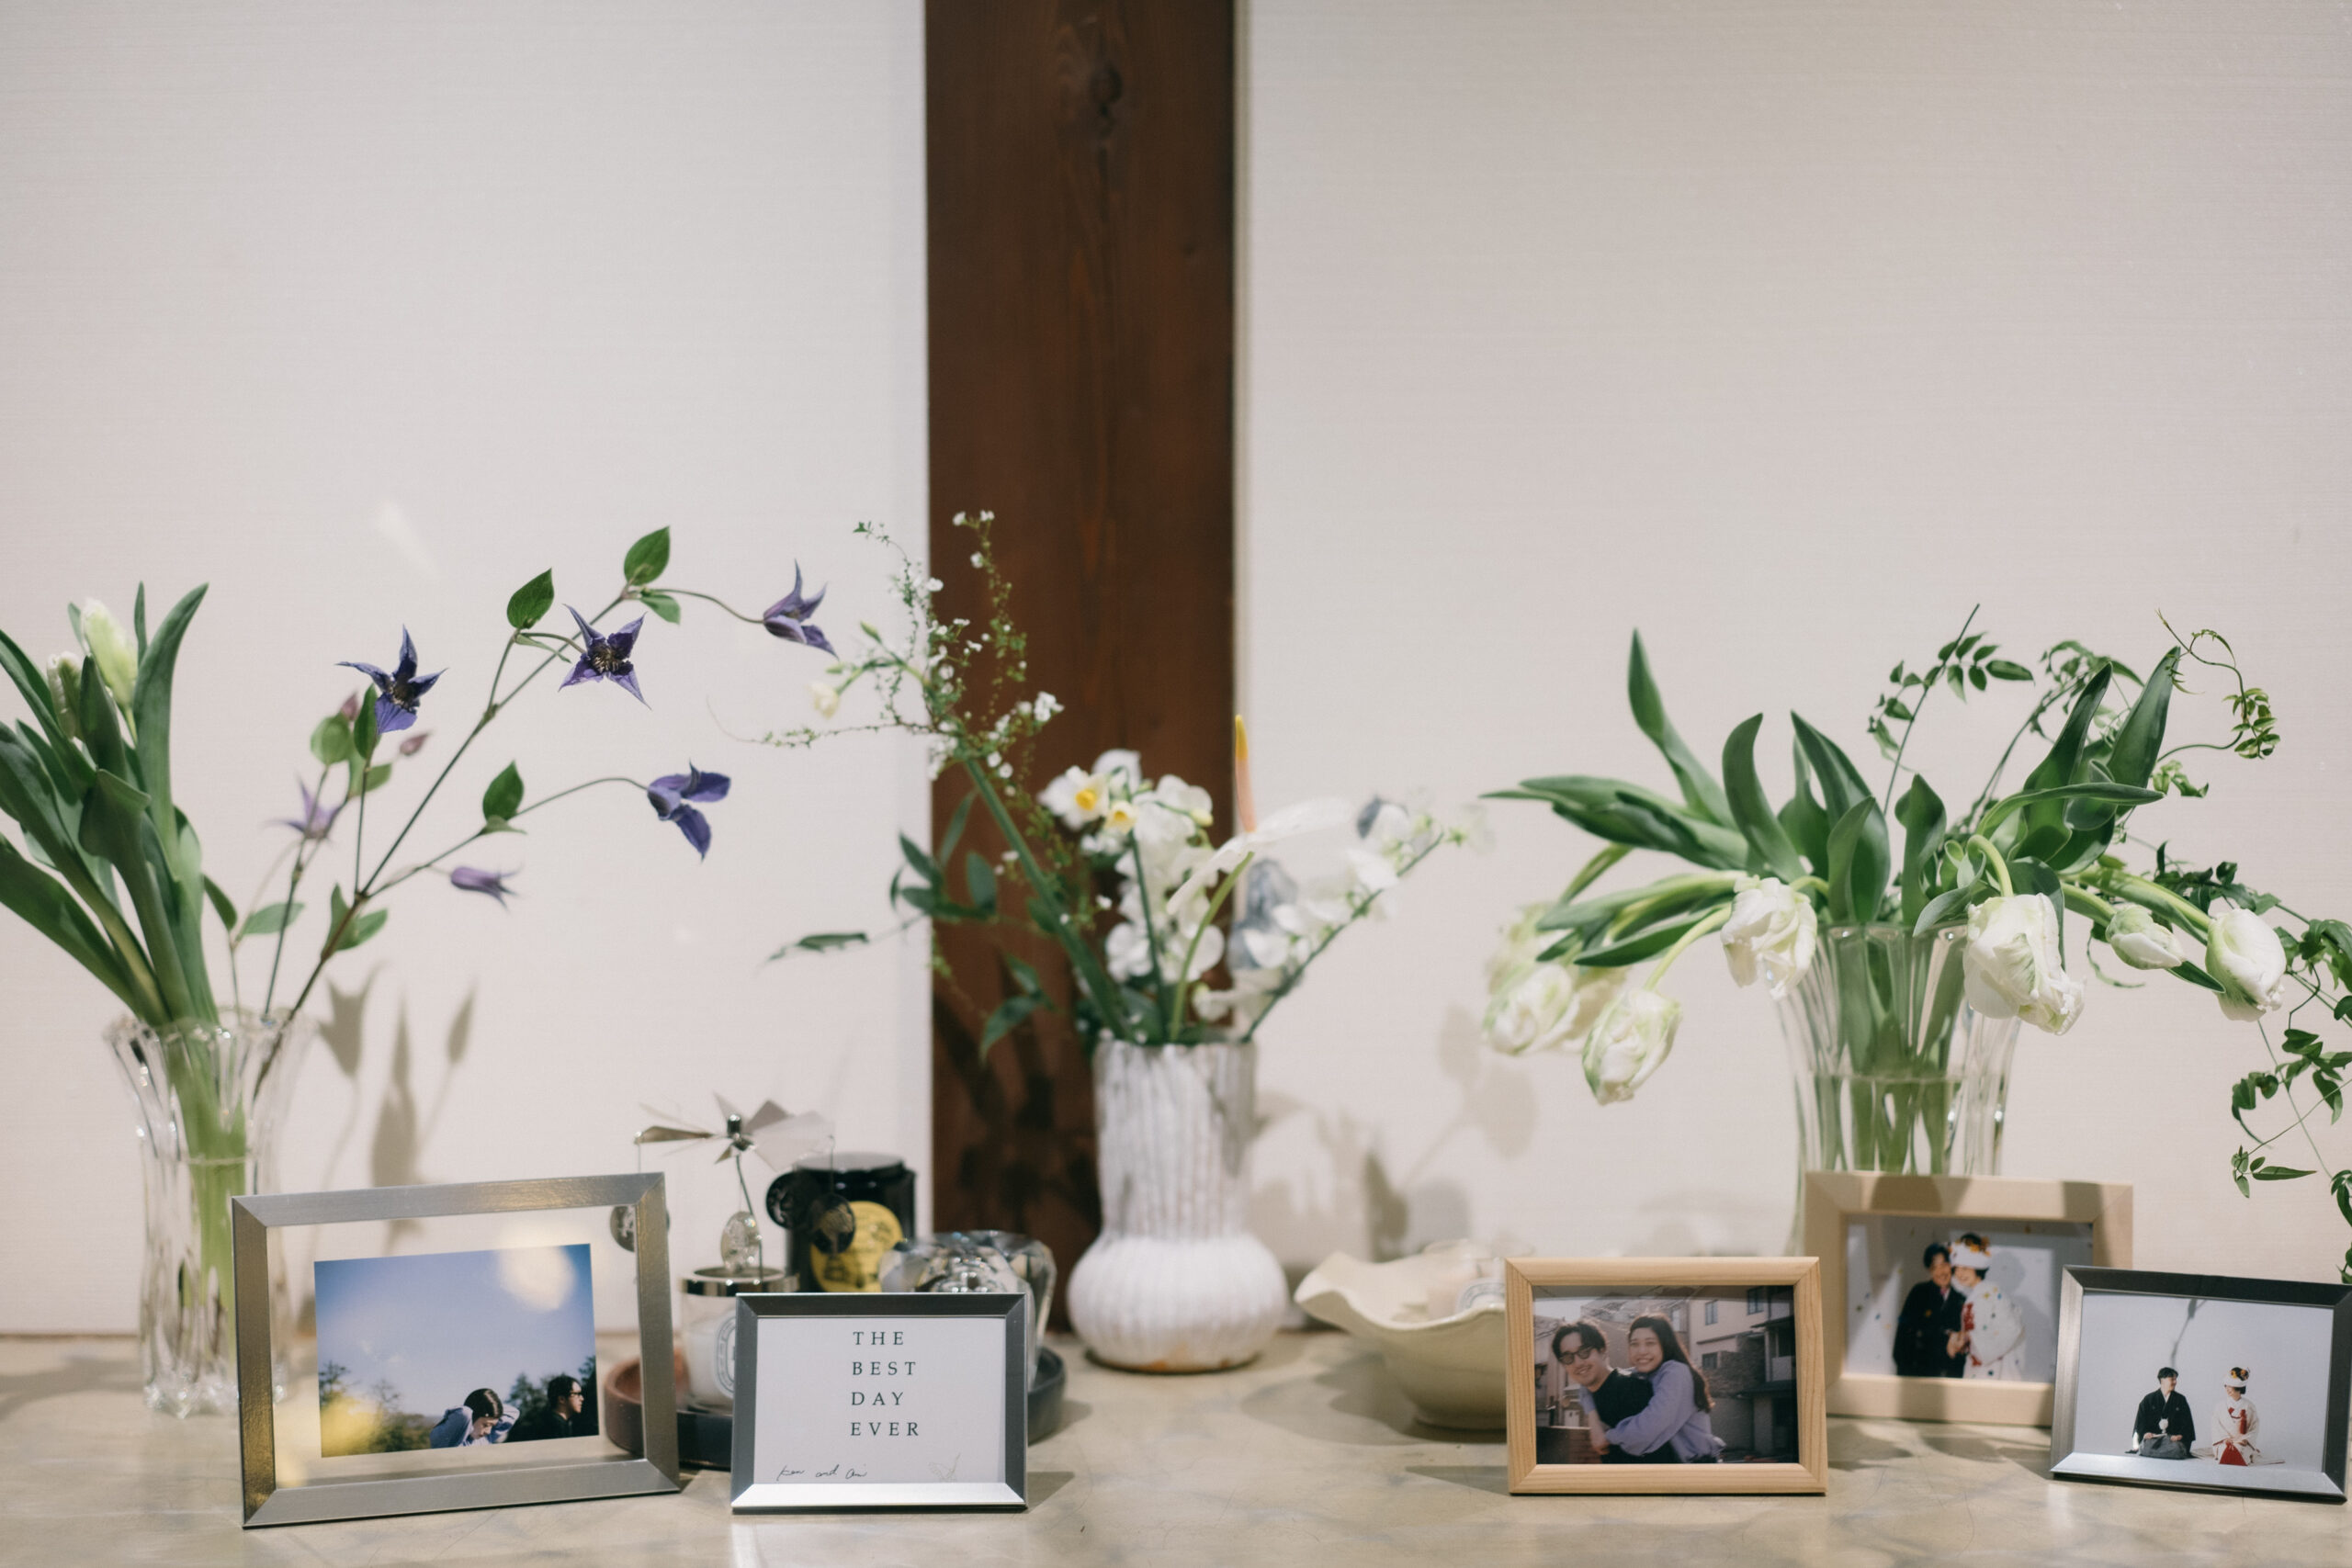 新郎新婦様の思い出の写真と前撮りのお写真を飾り、透明感のある花瓶に美しいお花が印象的なウェルカムスペース